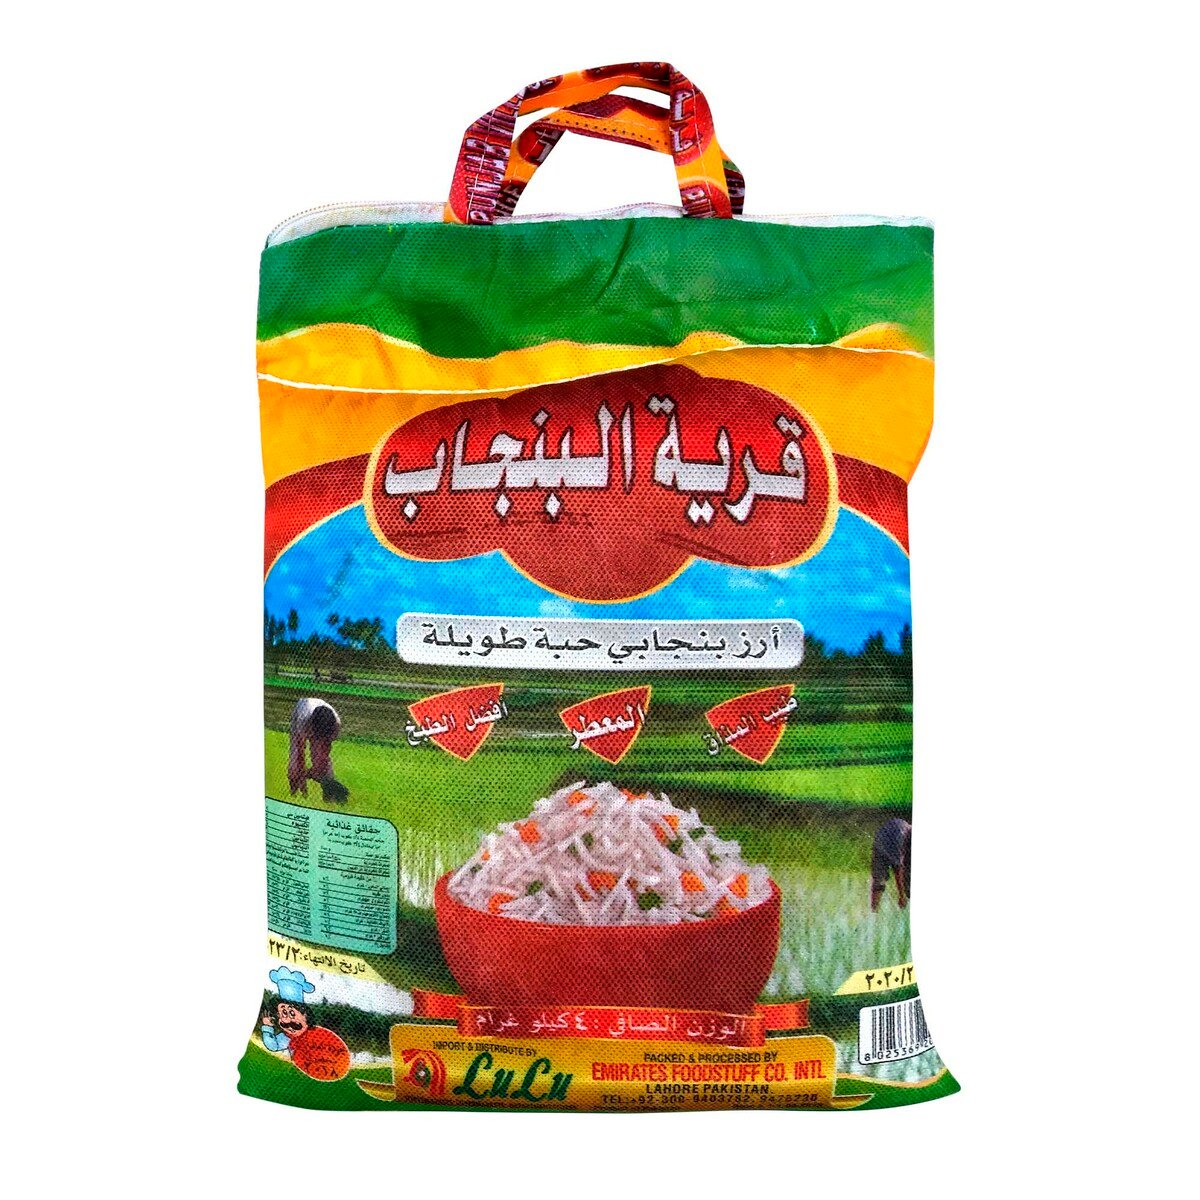 Punjab Village Punjabi Long Grain Rice 4kg